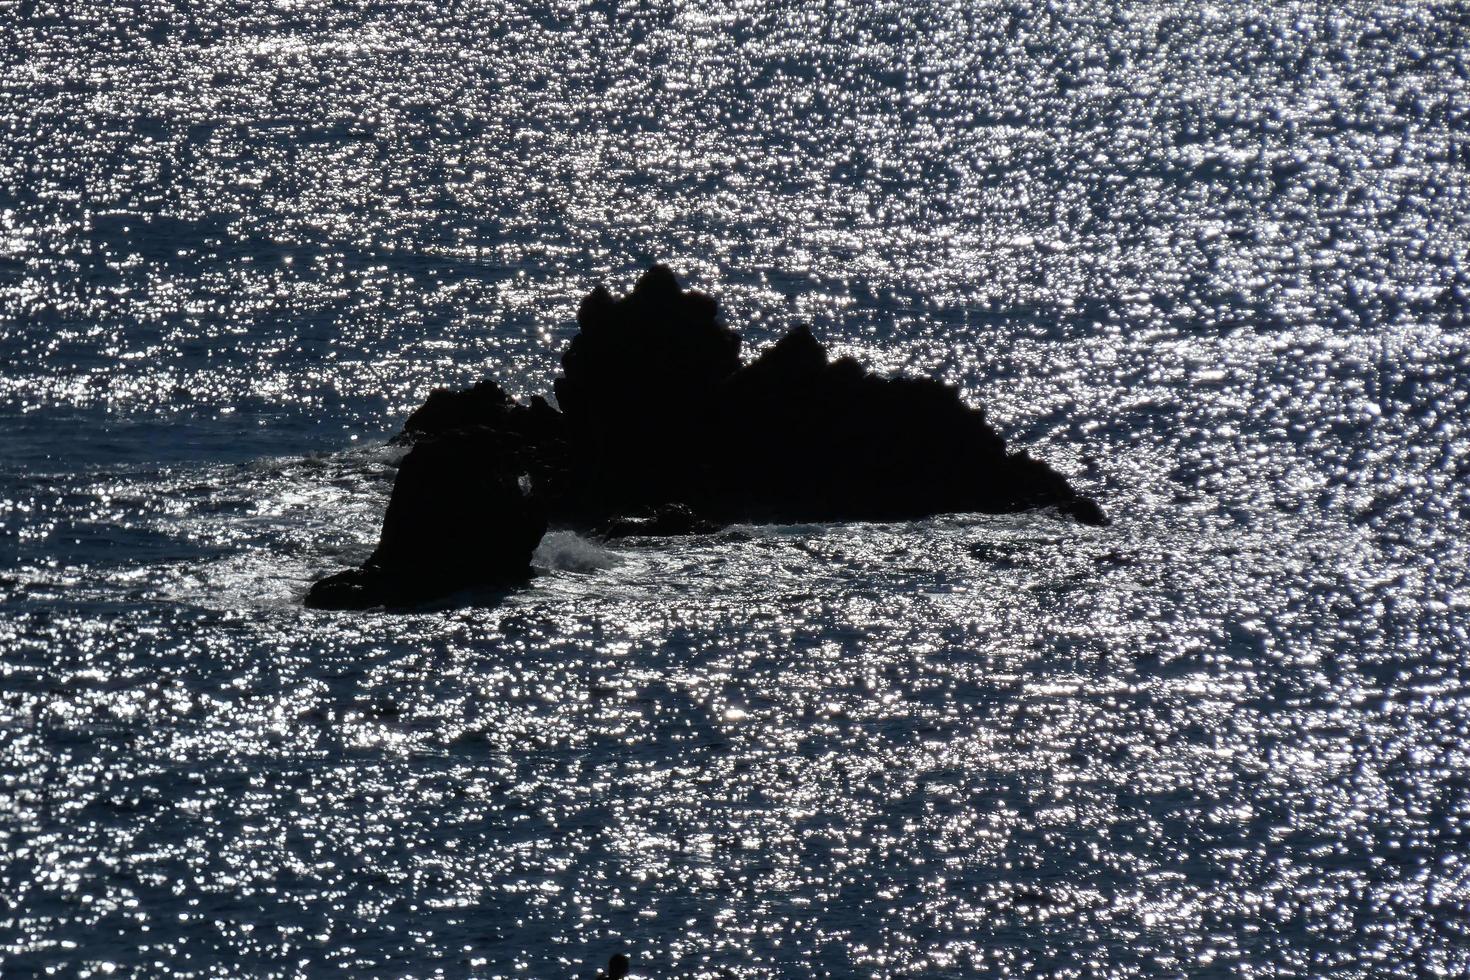 pinos, rocas y acantilados en la costa brava catalana en el mar mediterráneo foto